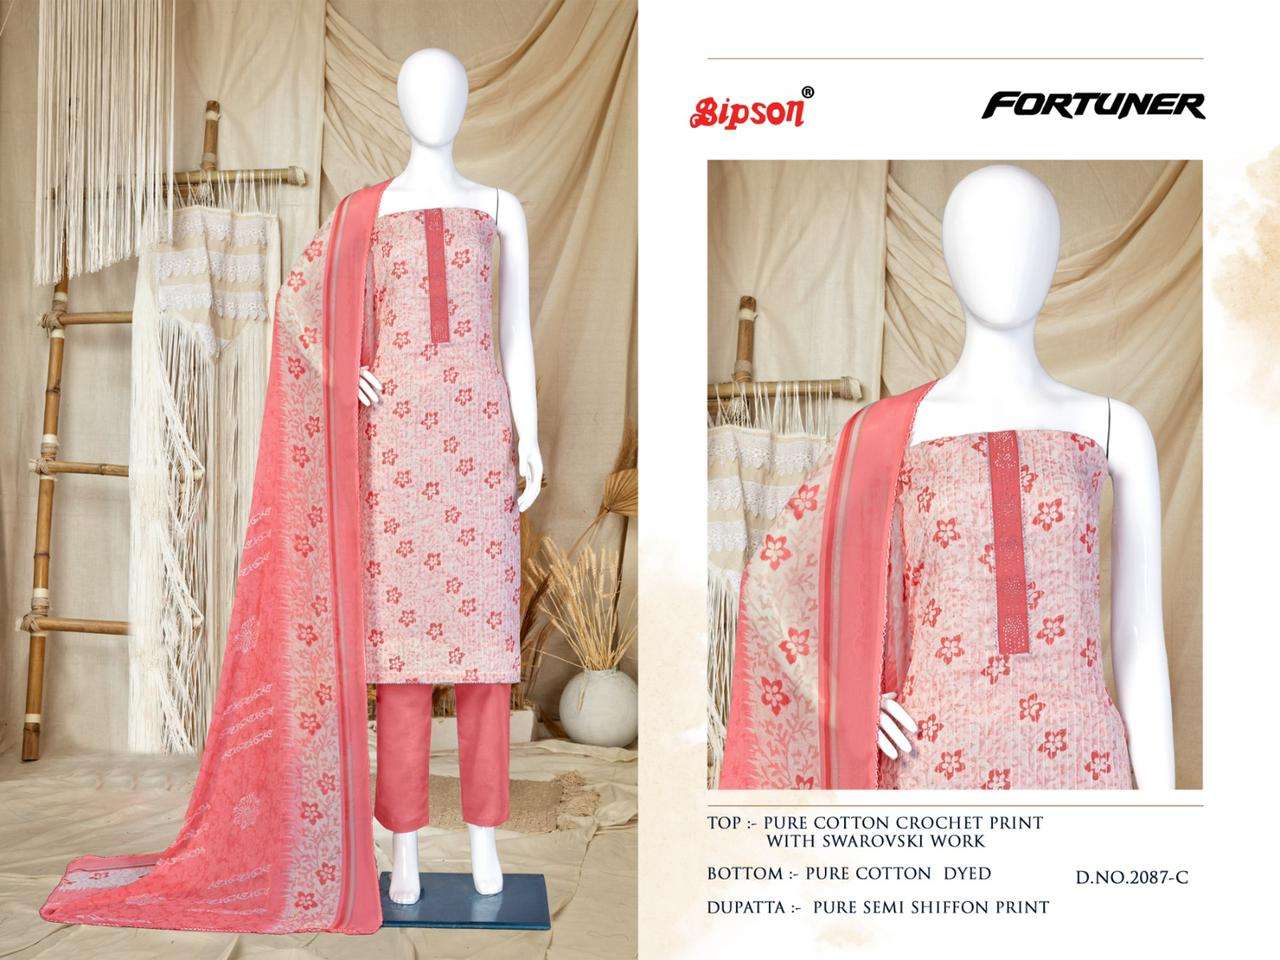 bipson fotruner 2087 designer summer special cotton salwar kameez online shopping surat